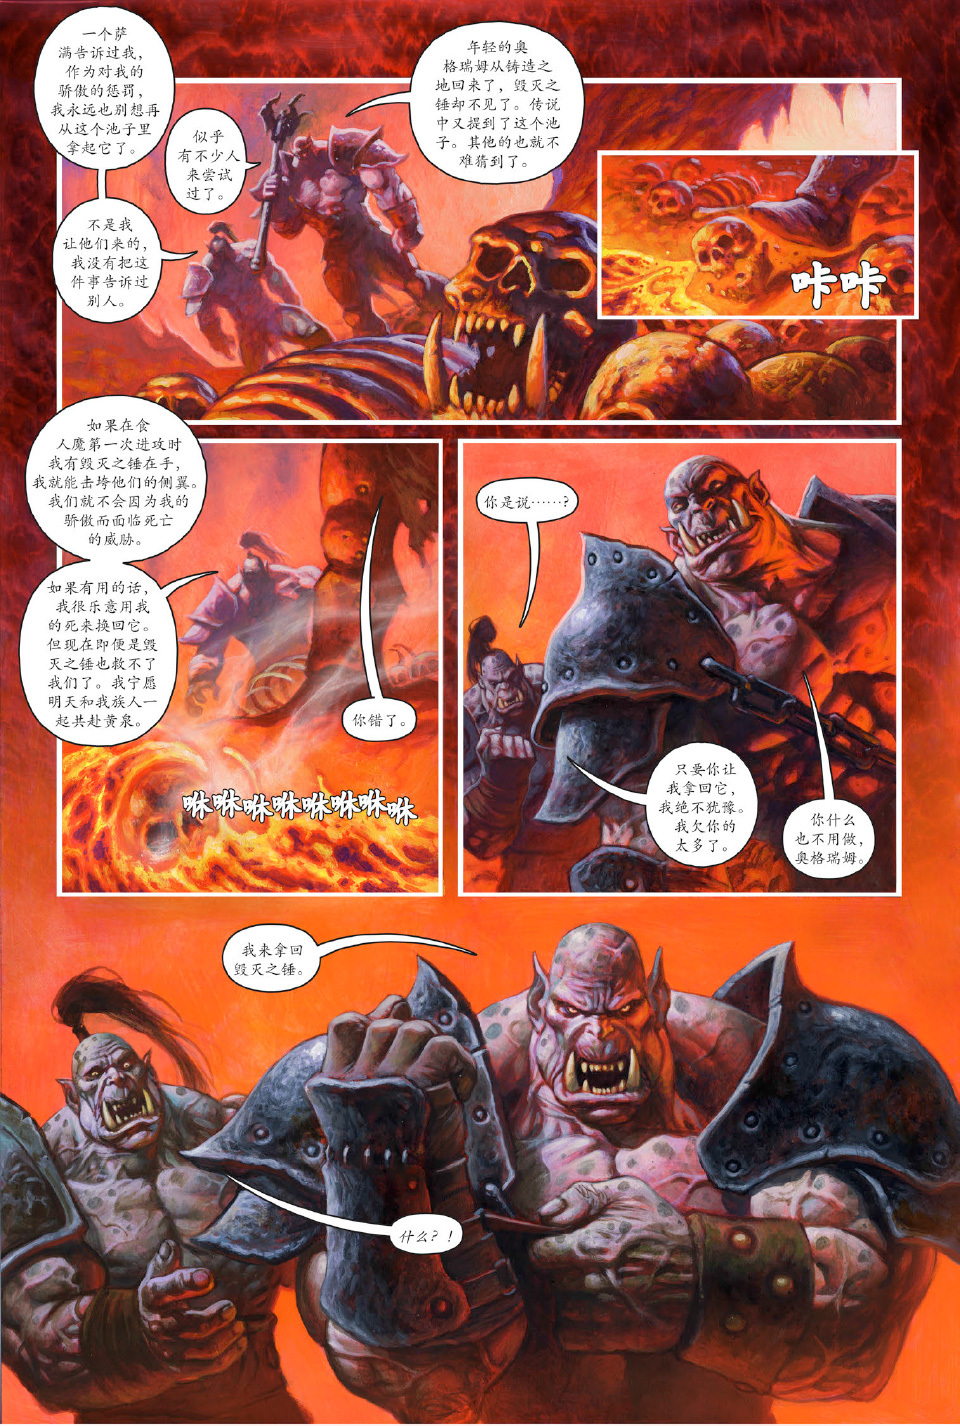 魔兽世界最新官方漫画--战术大师《黑手》